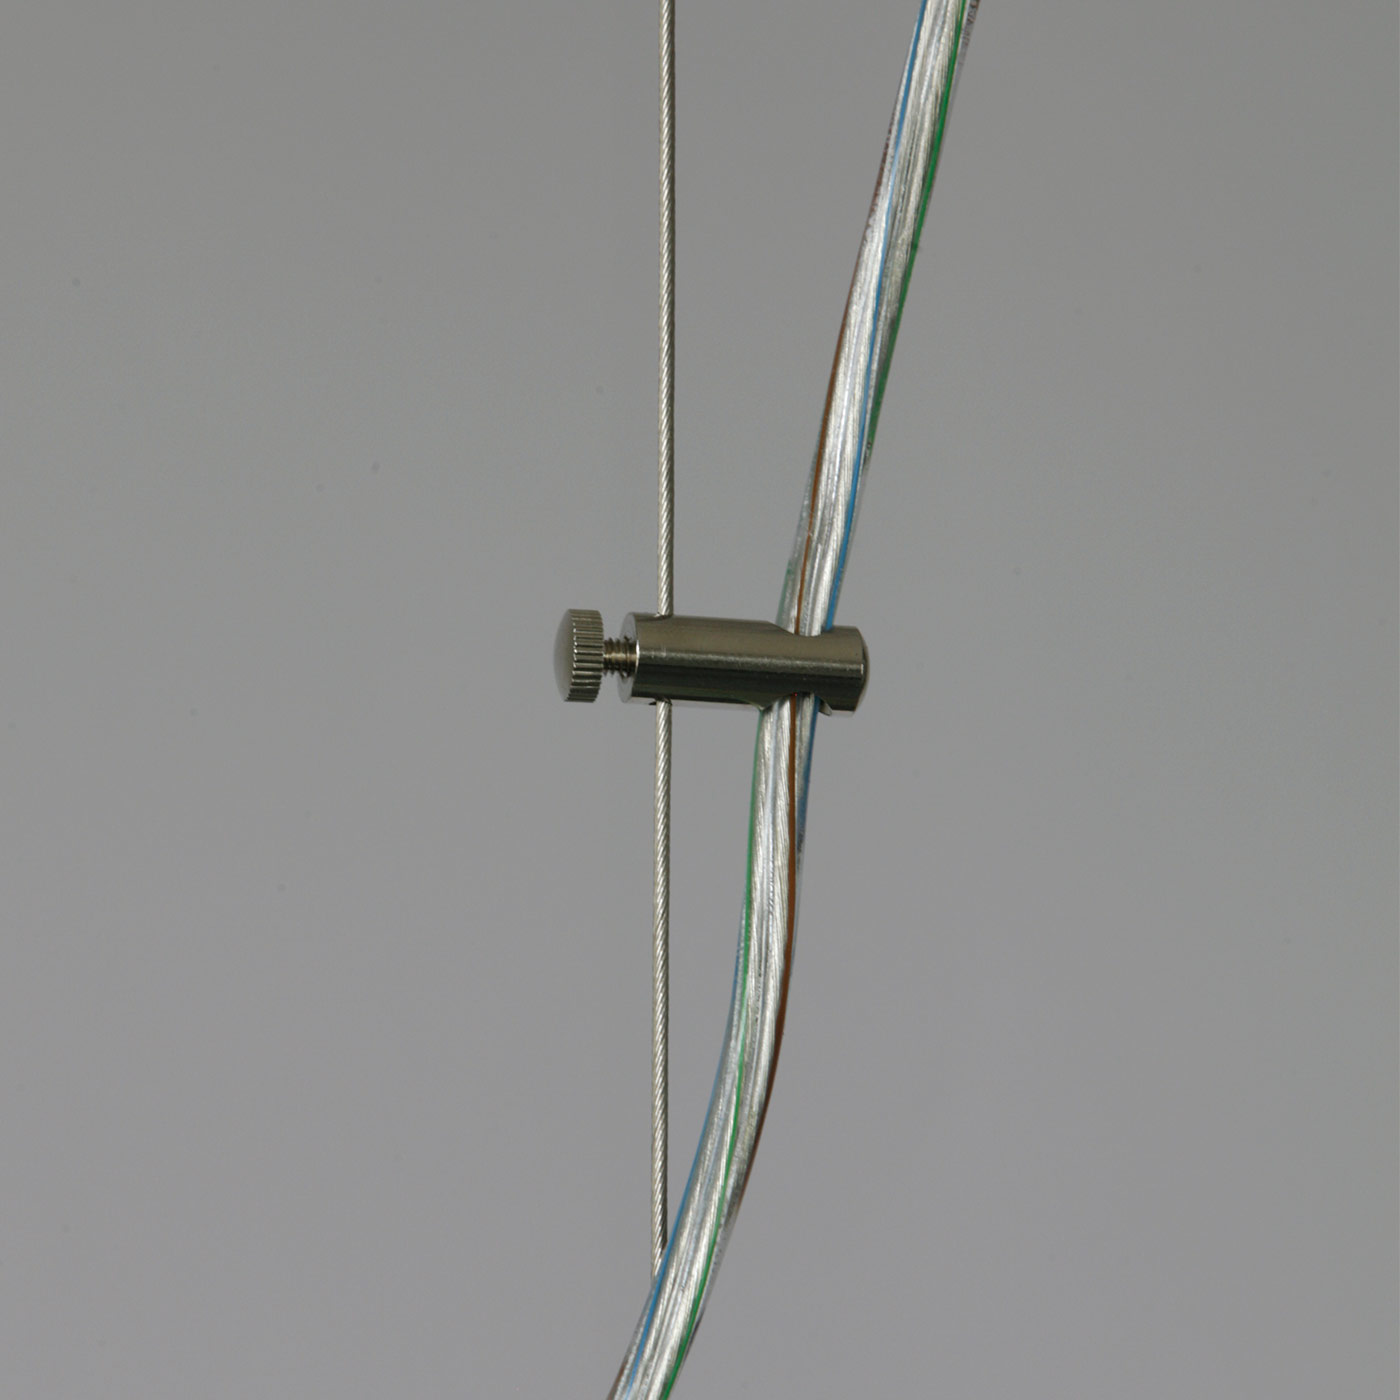 Kugel-Pendelleuchte ADRIANA mit Stahlseil Ø 20–60 cm: Lieferung mit 100/200 cm Stahlseil, Zuleitung mit transparentem PVC-Kabel